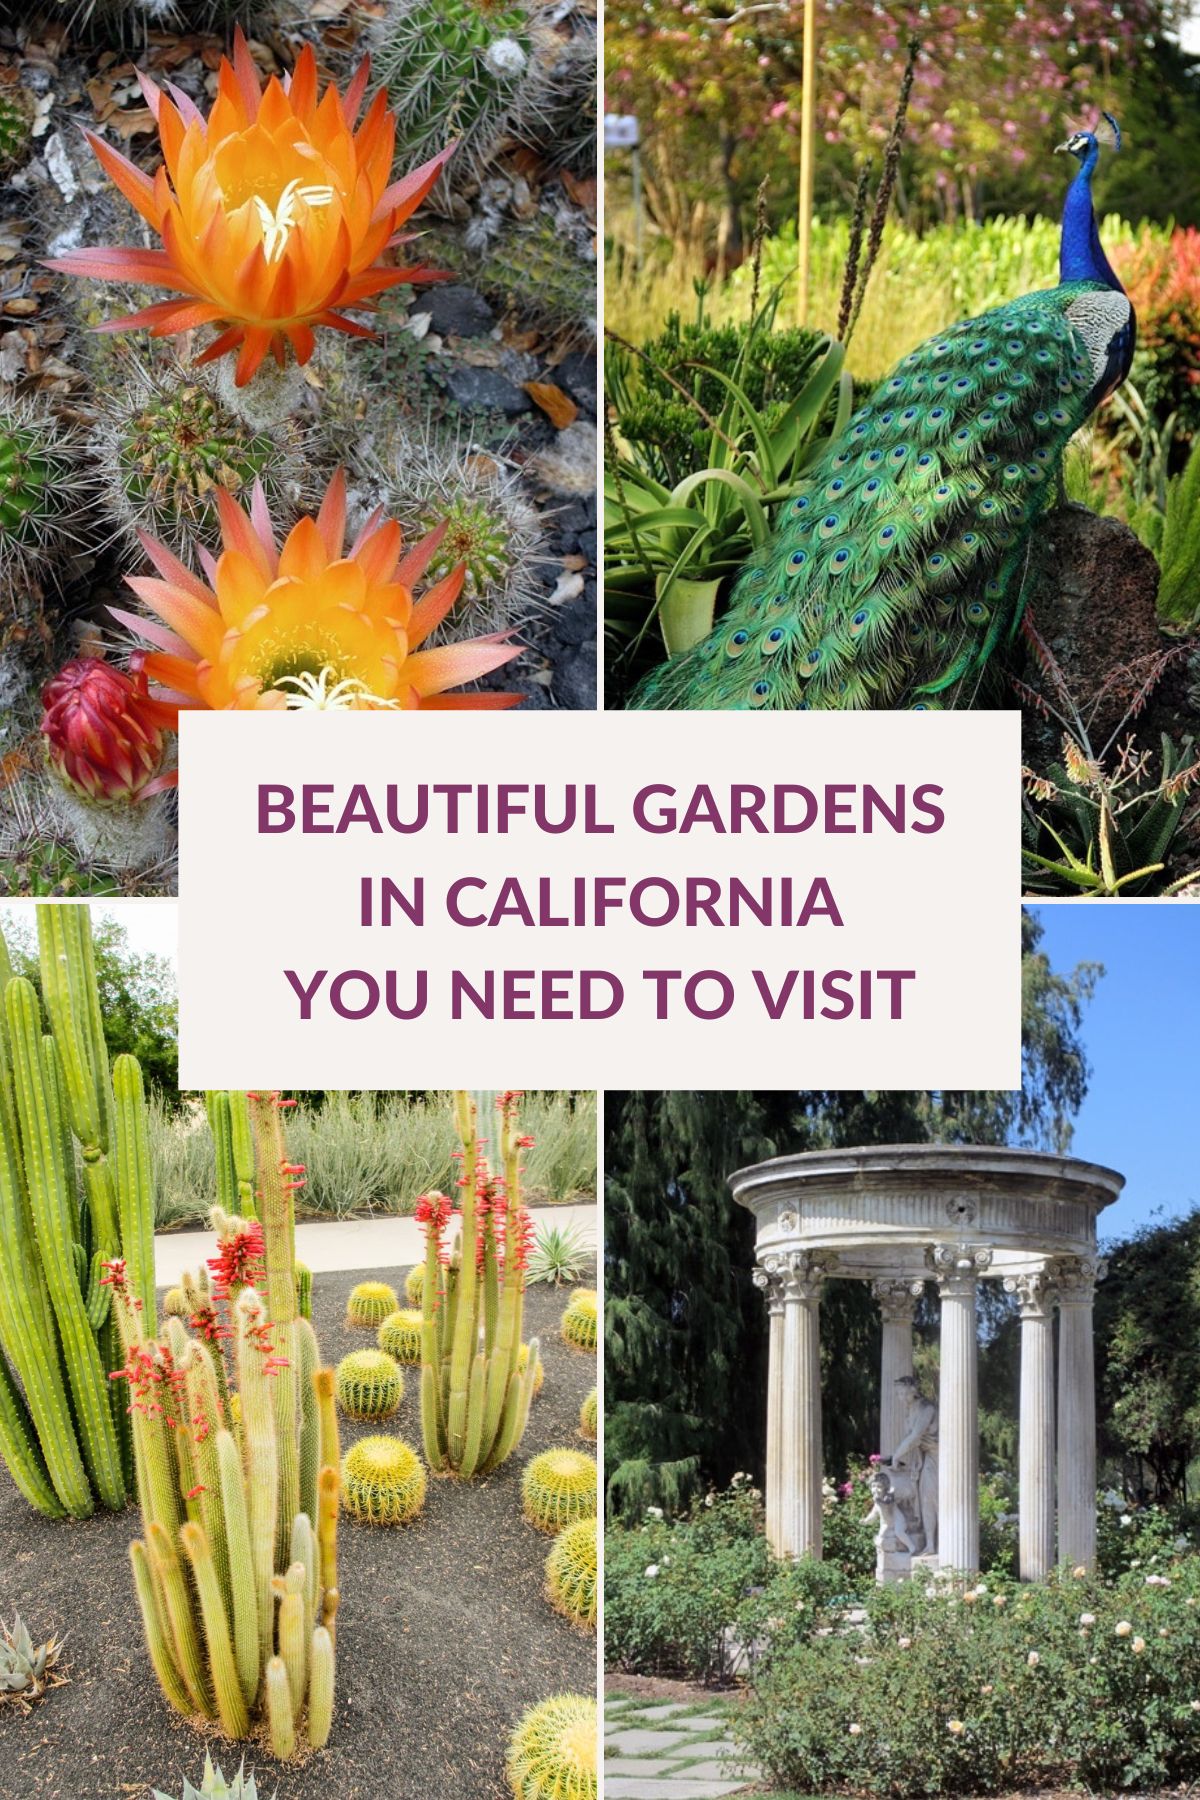  22 Khu Vườn Đẹp Ở California Bạn Sẽ Thích